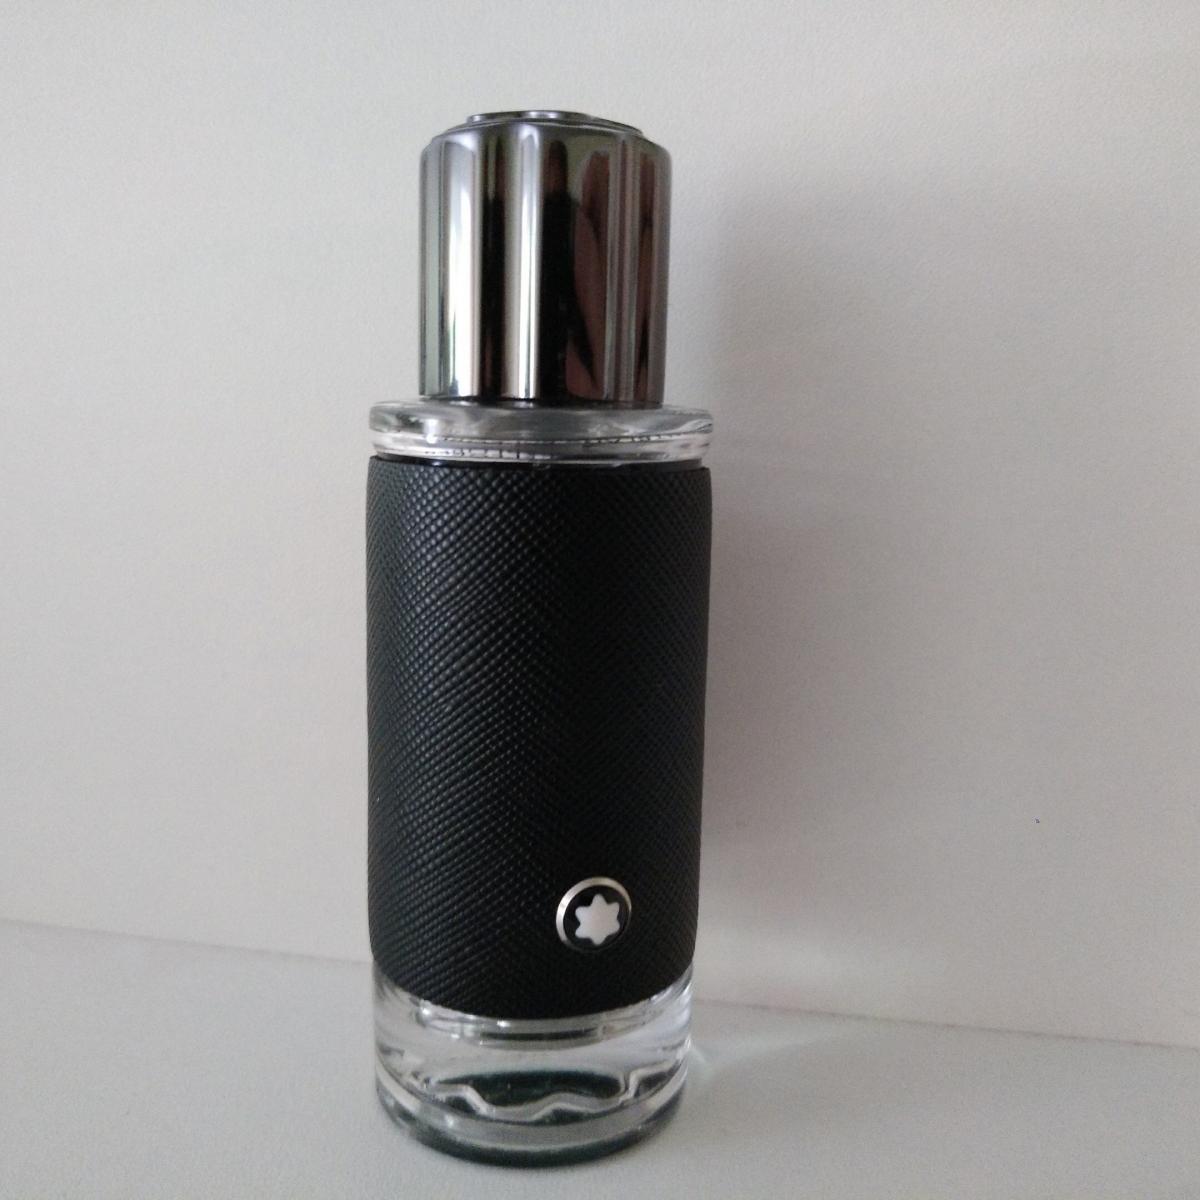 Explorer Montblanc cologne - a fragrance for men 2019